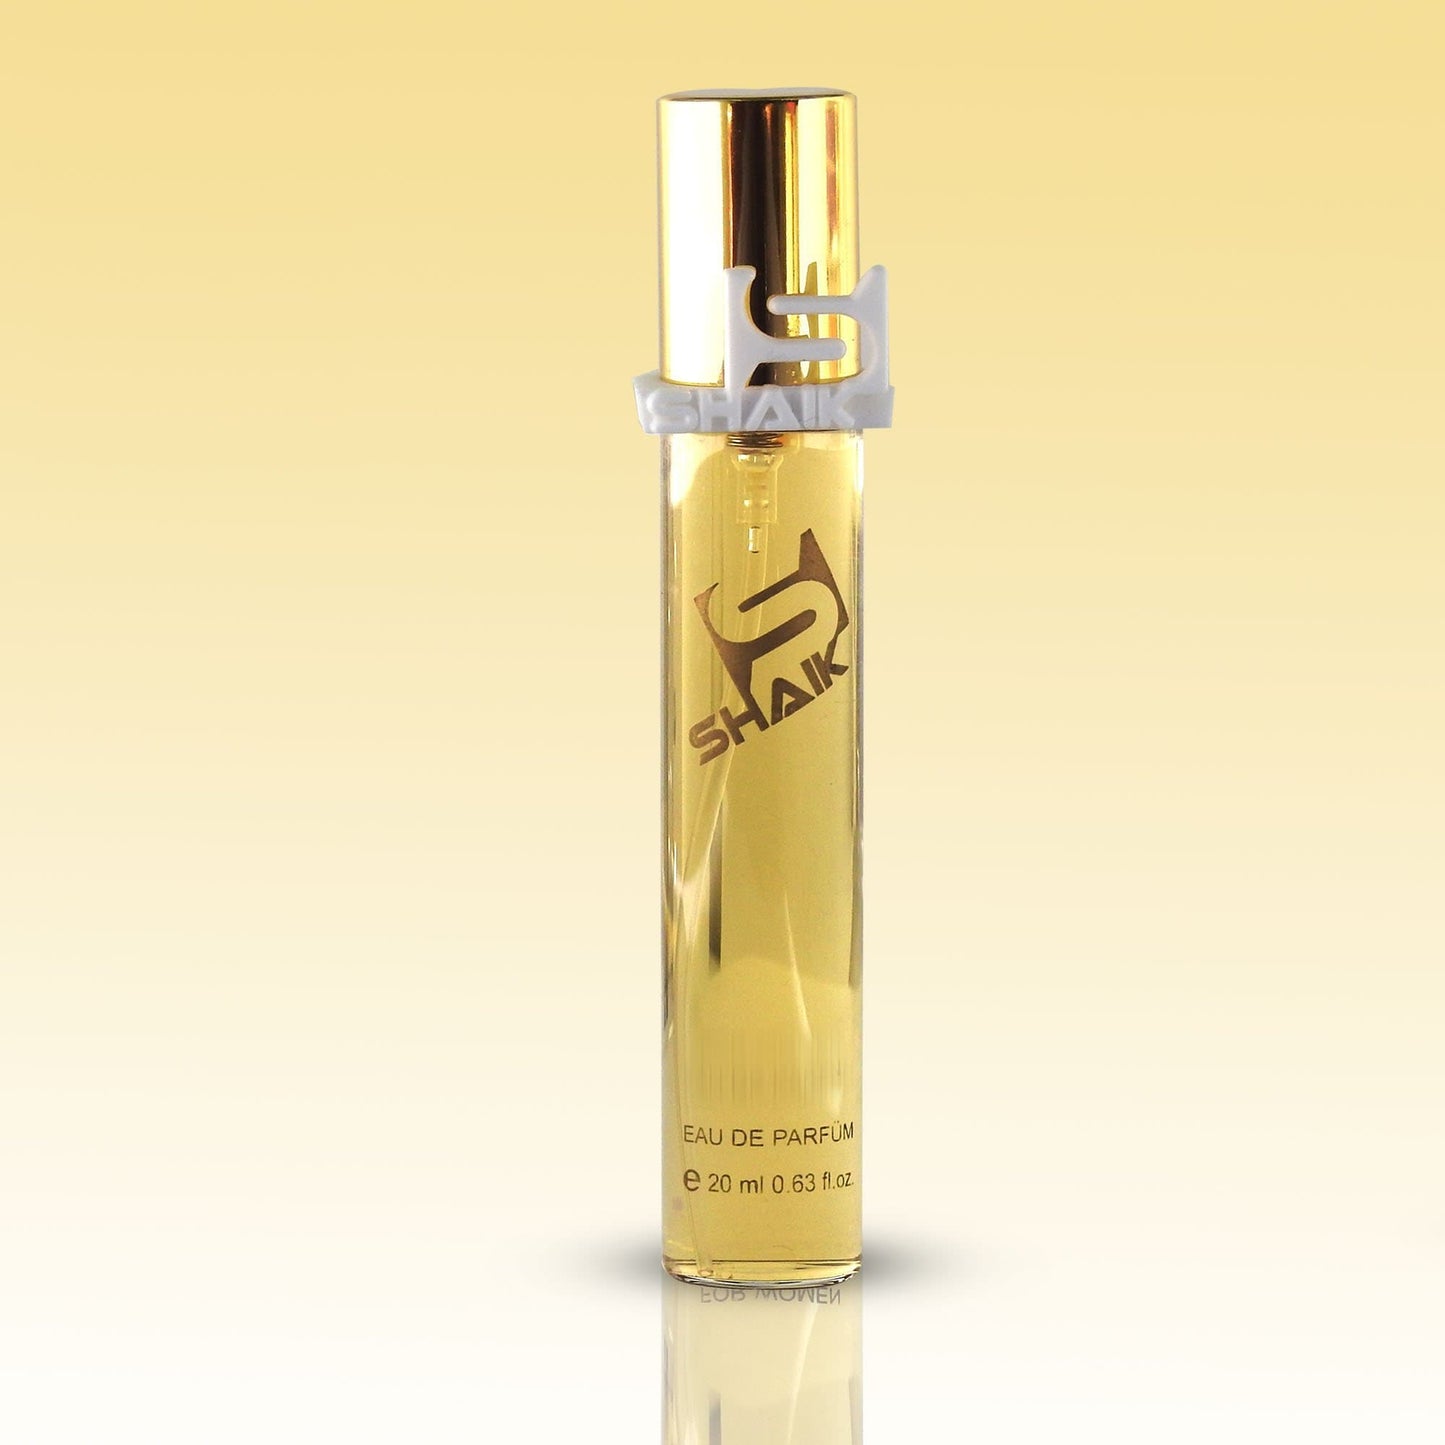 Shaik - 111 - Rosemary, Tuberose, Suede - Shaik Perfume